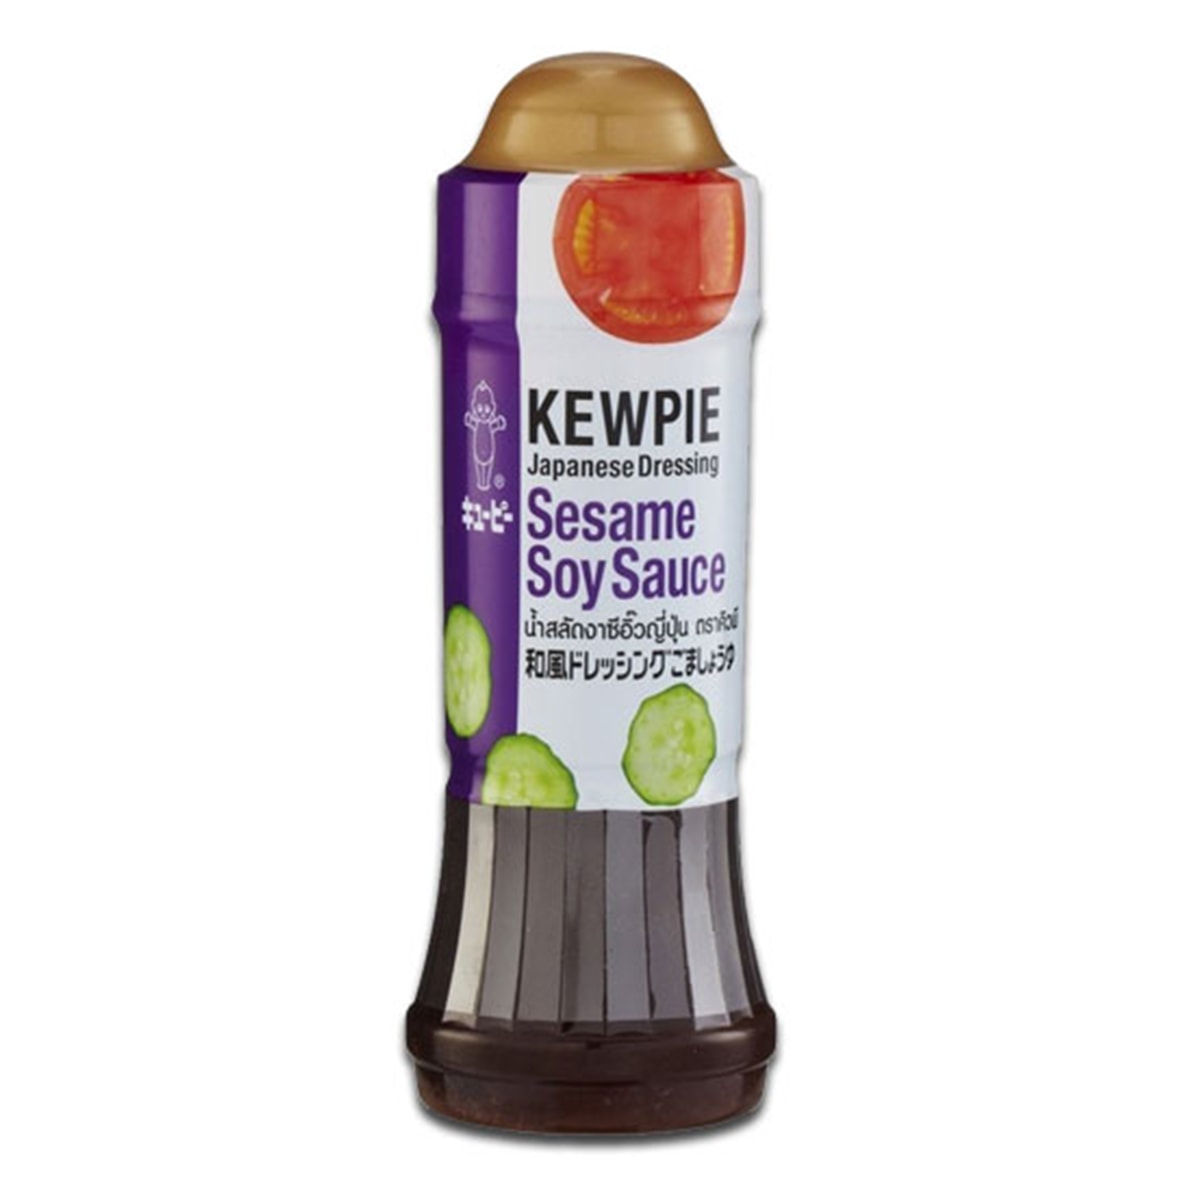 Buy Kewpie Japanese Dressing (Sesame Soy Sauce) - 210 ml